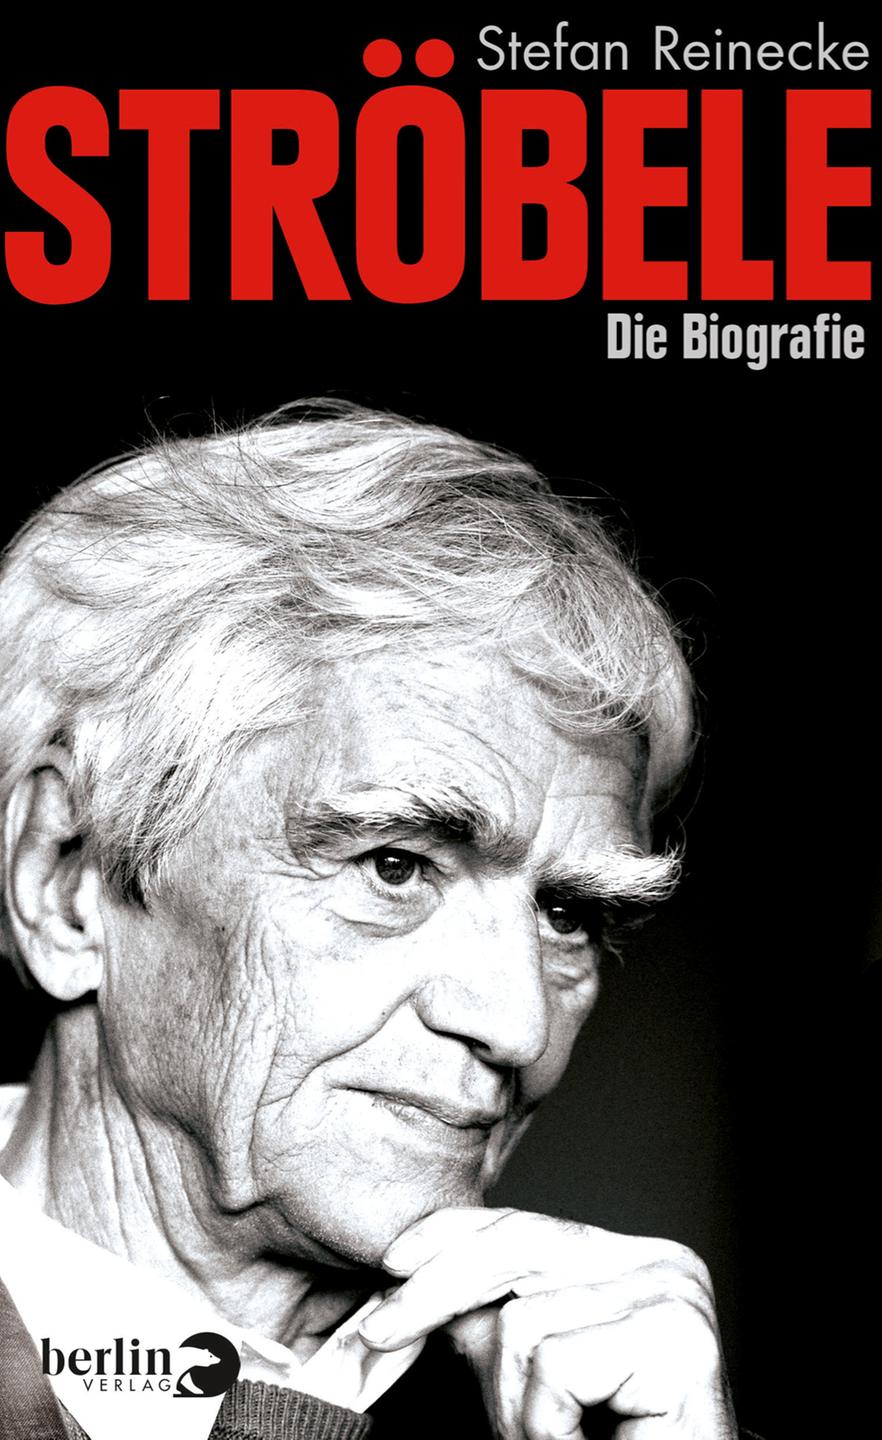 Buchcover: "Ströbele.  Die Biografie" von Stefan Reinecke